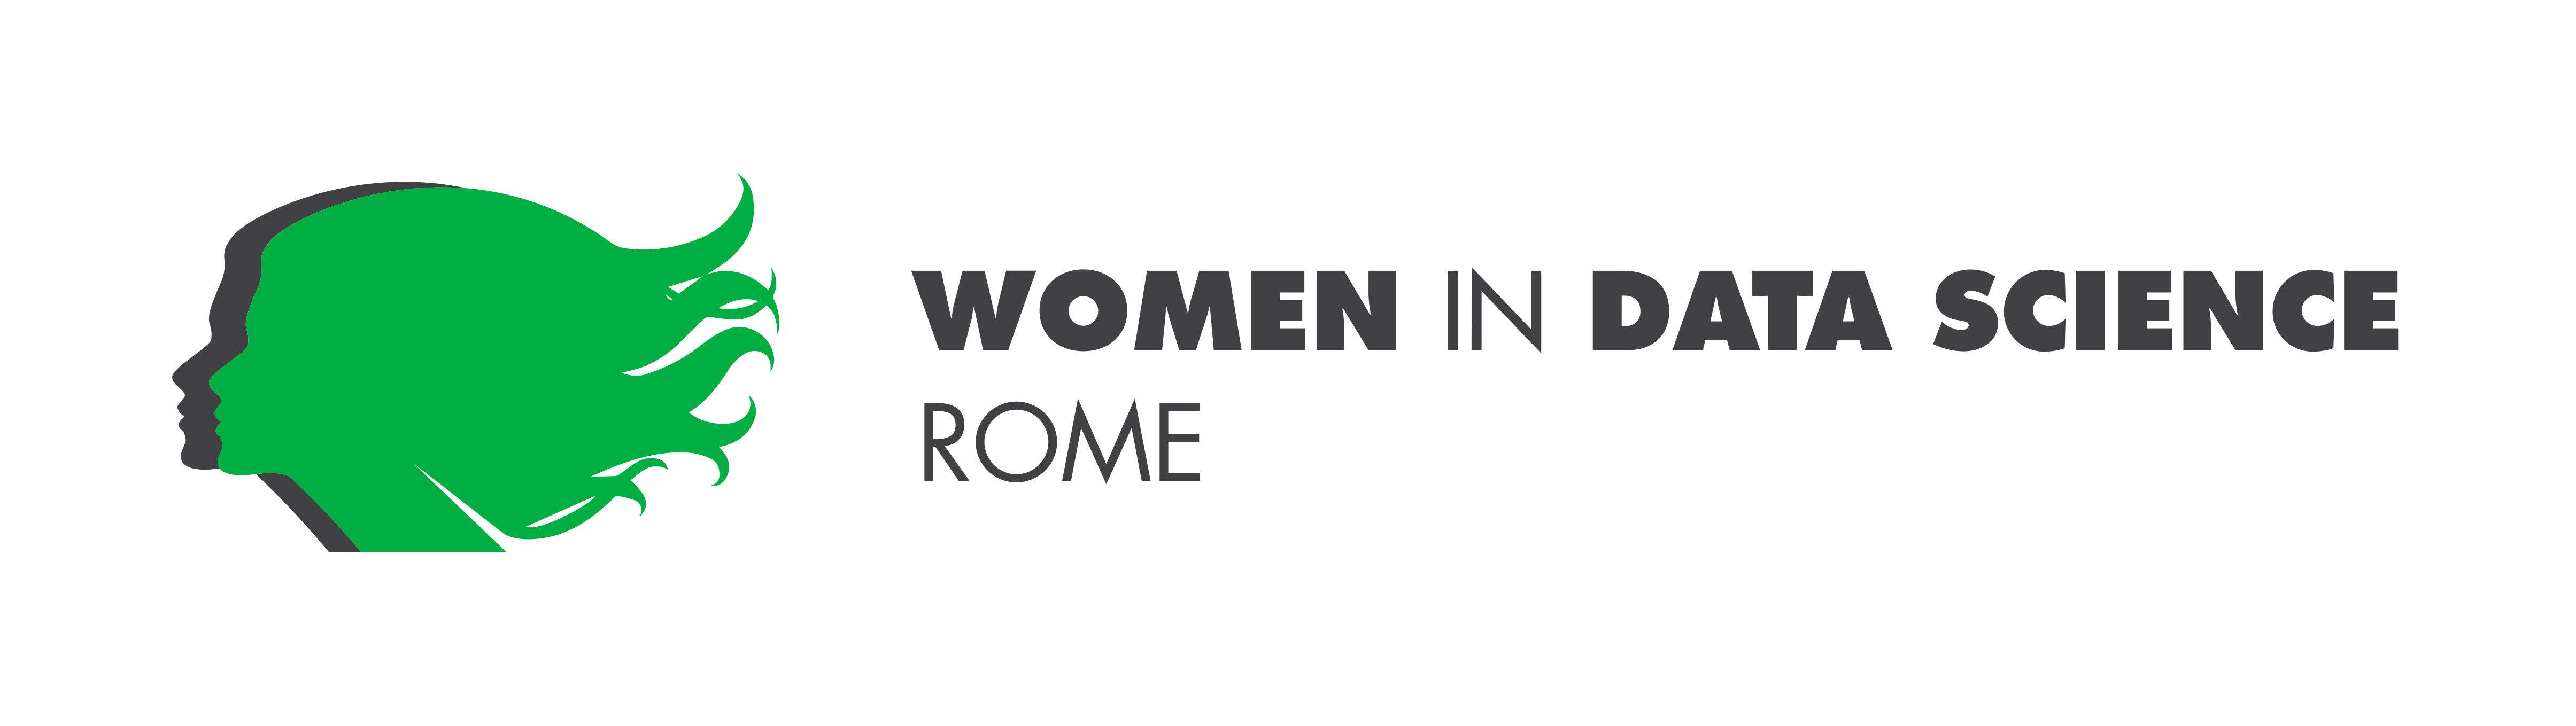 Logo of WIDS-Rome Event